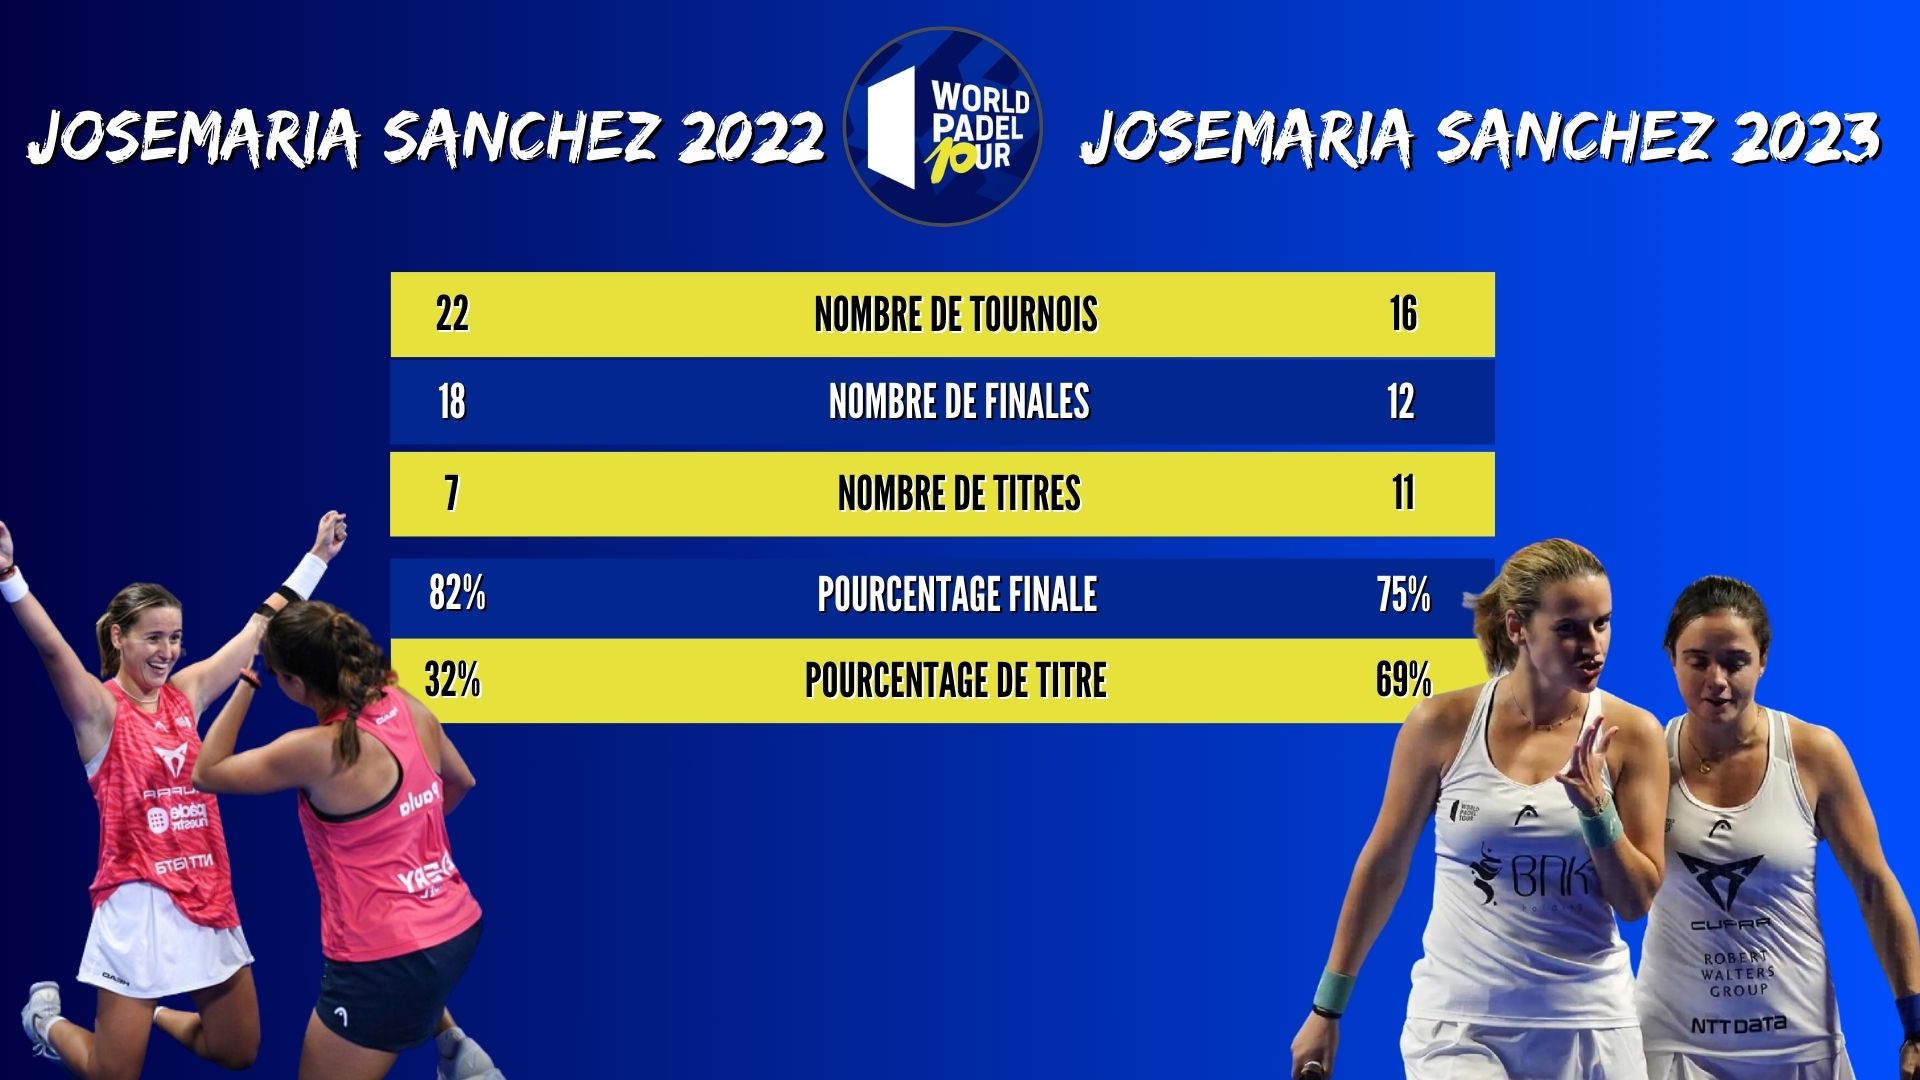 Josemaría Sánchez 2022 vs Josemaría Sánchez 2023